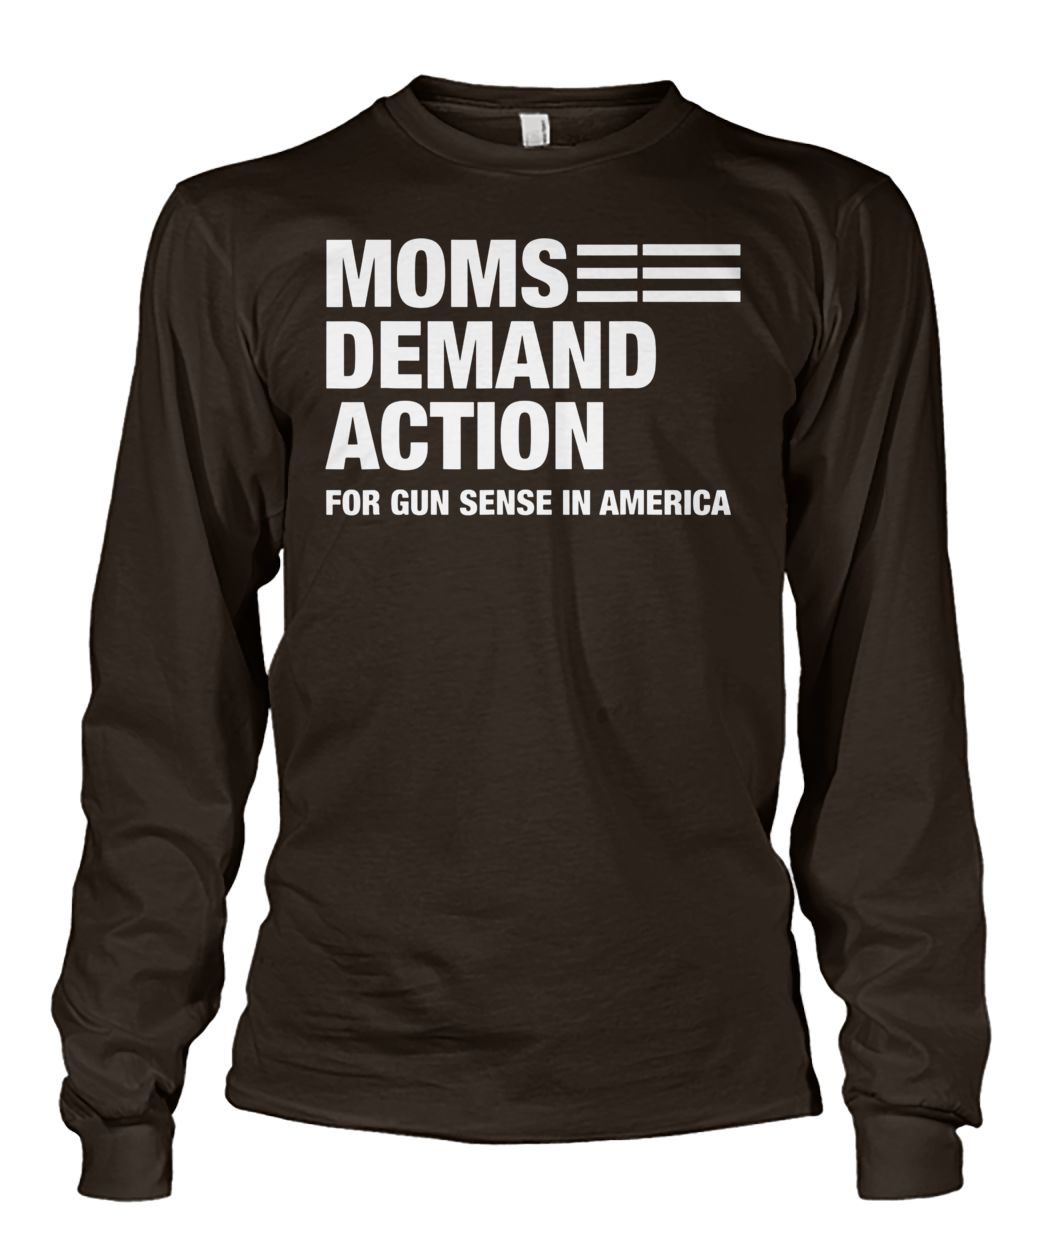 Moms demand action for gun sense in america unisex long sleeve